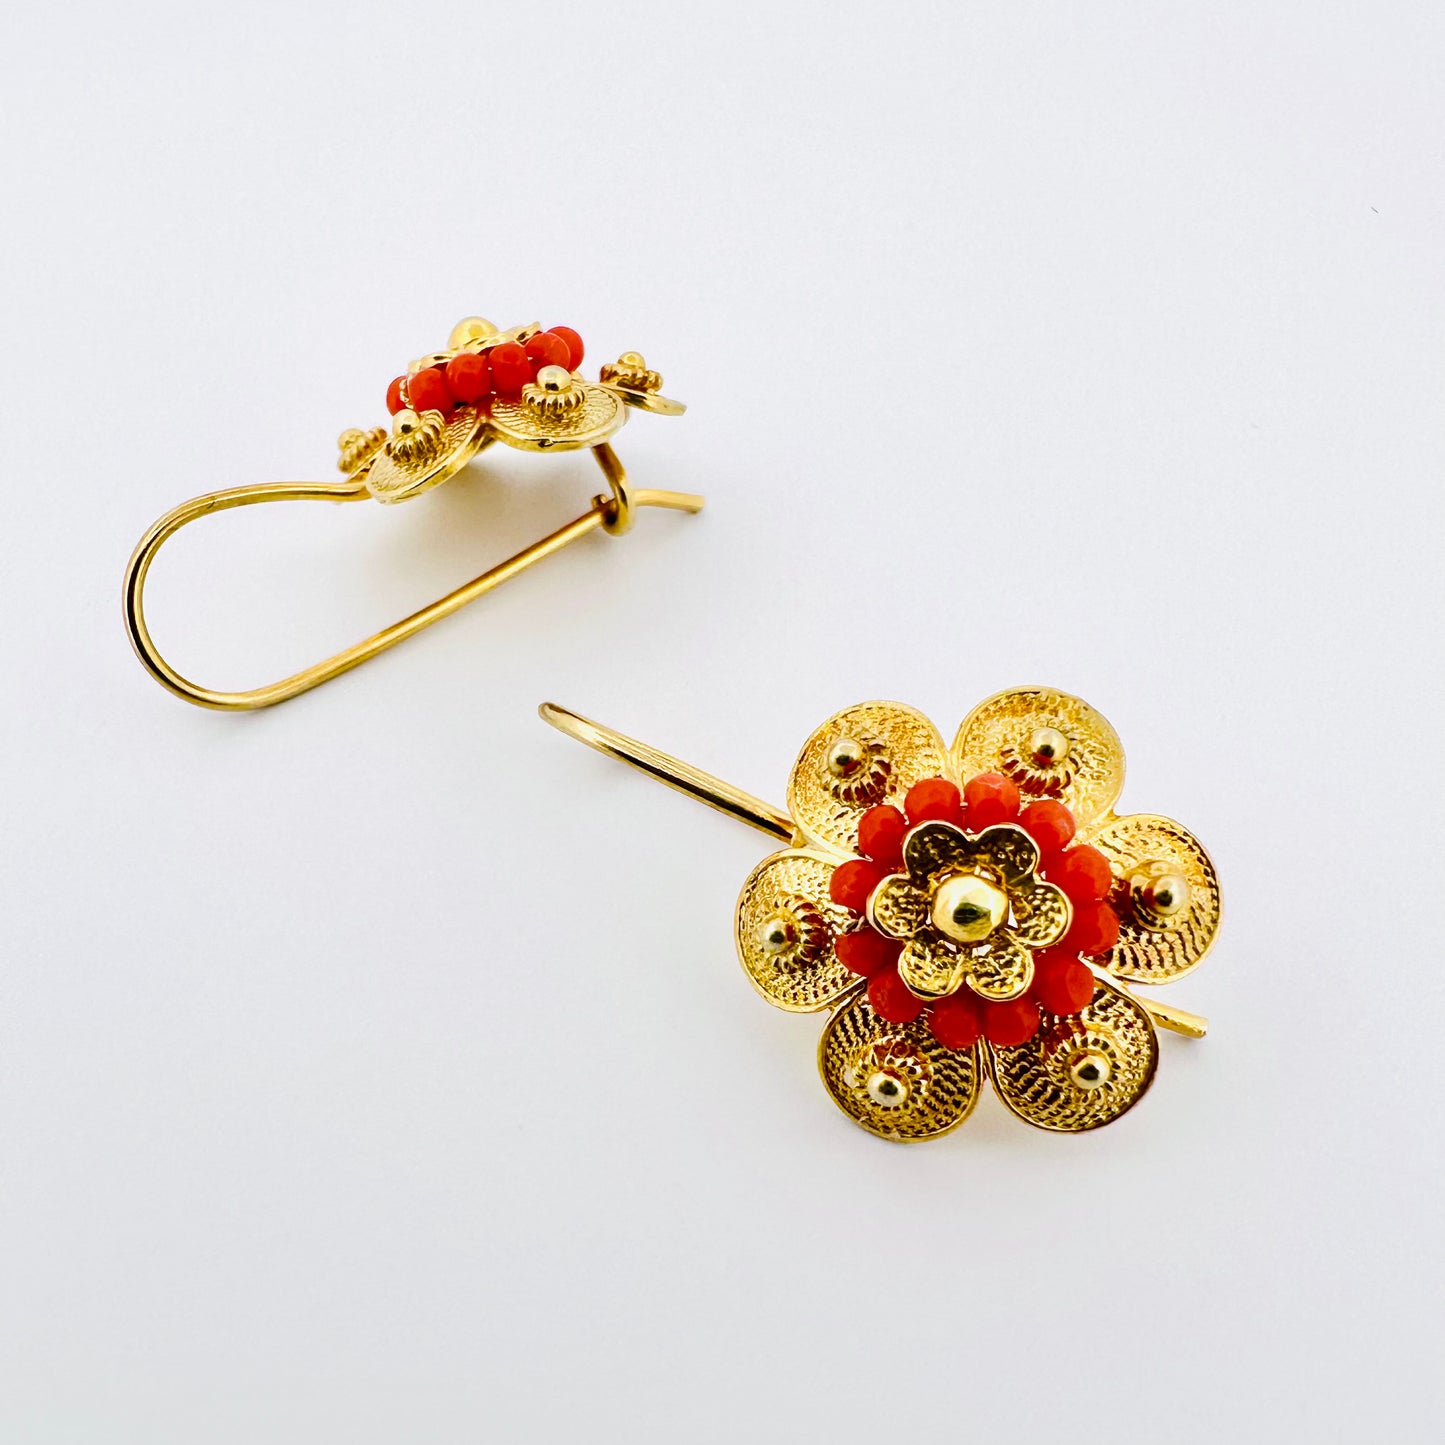 Coral Flower Earrings - Gold - Last pair!